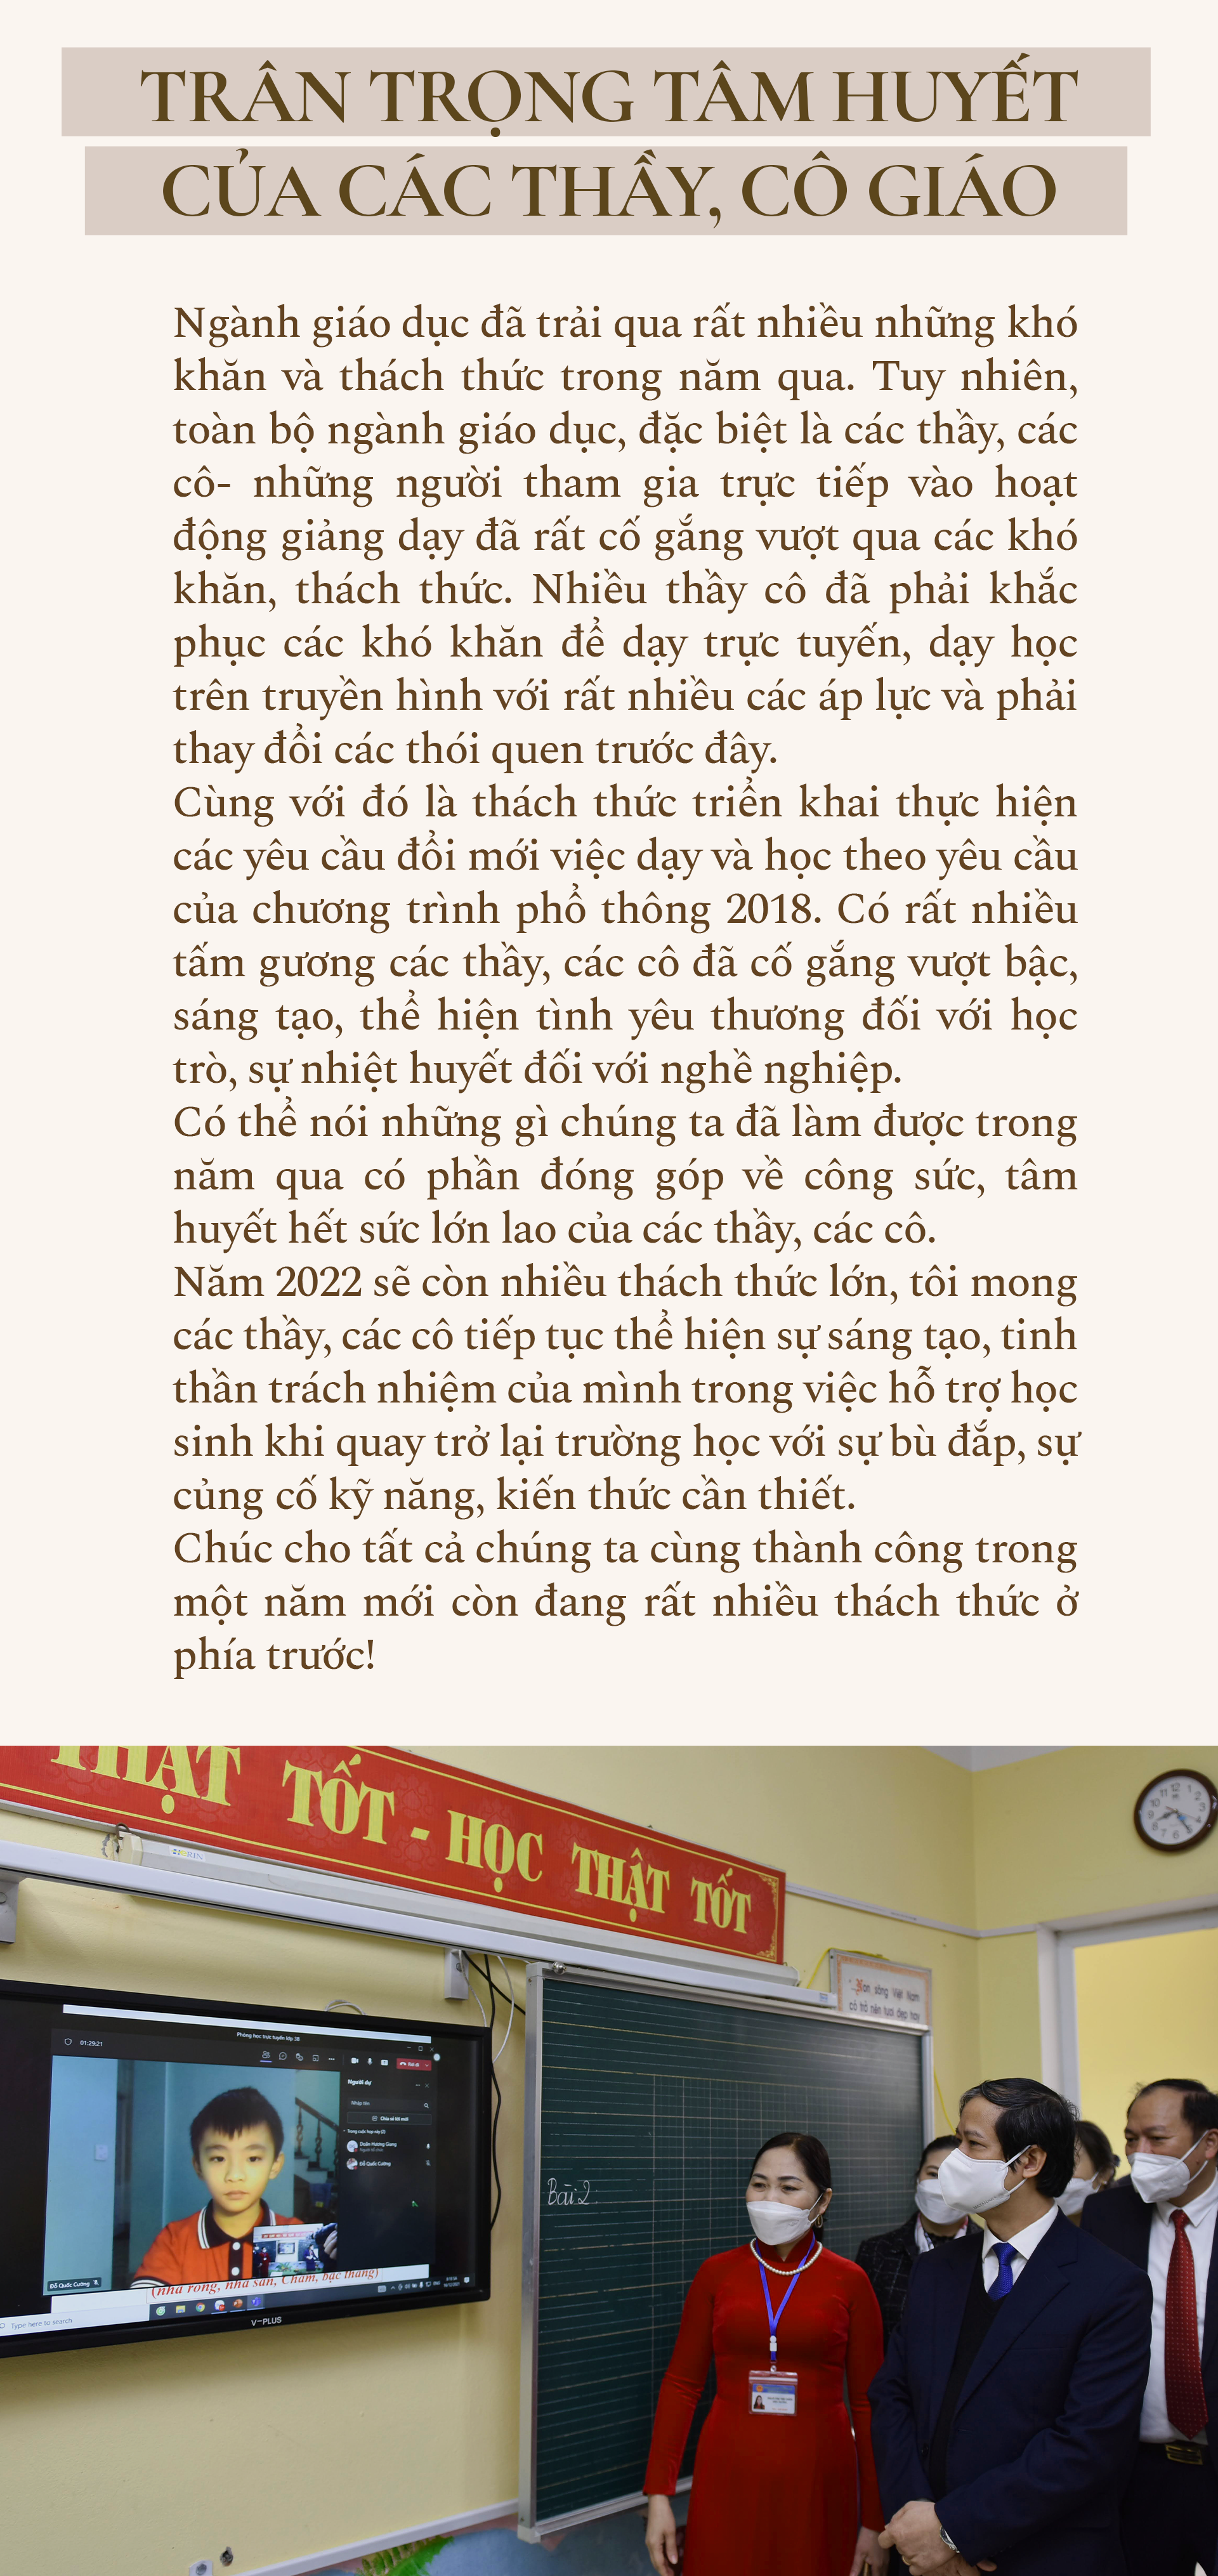 Bộ trưởng Bộ GD&ĐT Nguyễn Kim Sơn: Bù đắp kiến thức, tái thiết giáo dục - ảnh 11